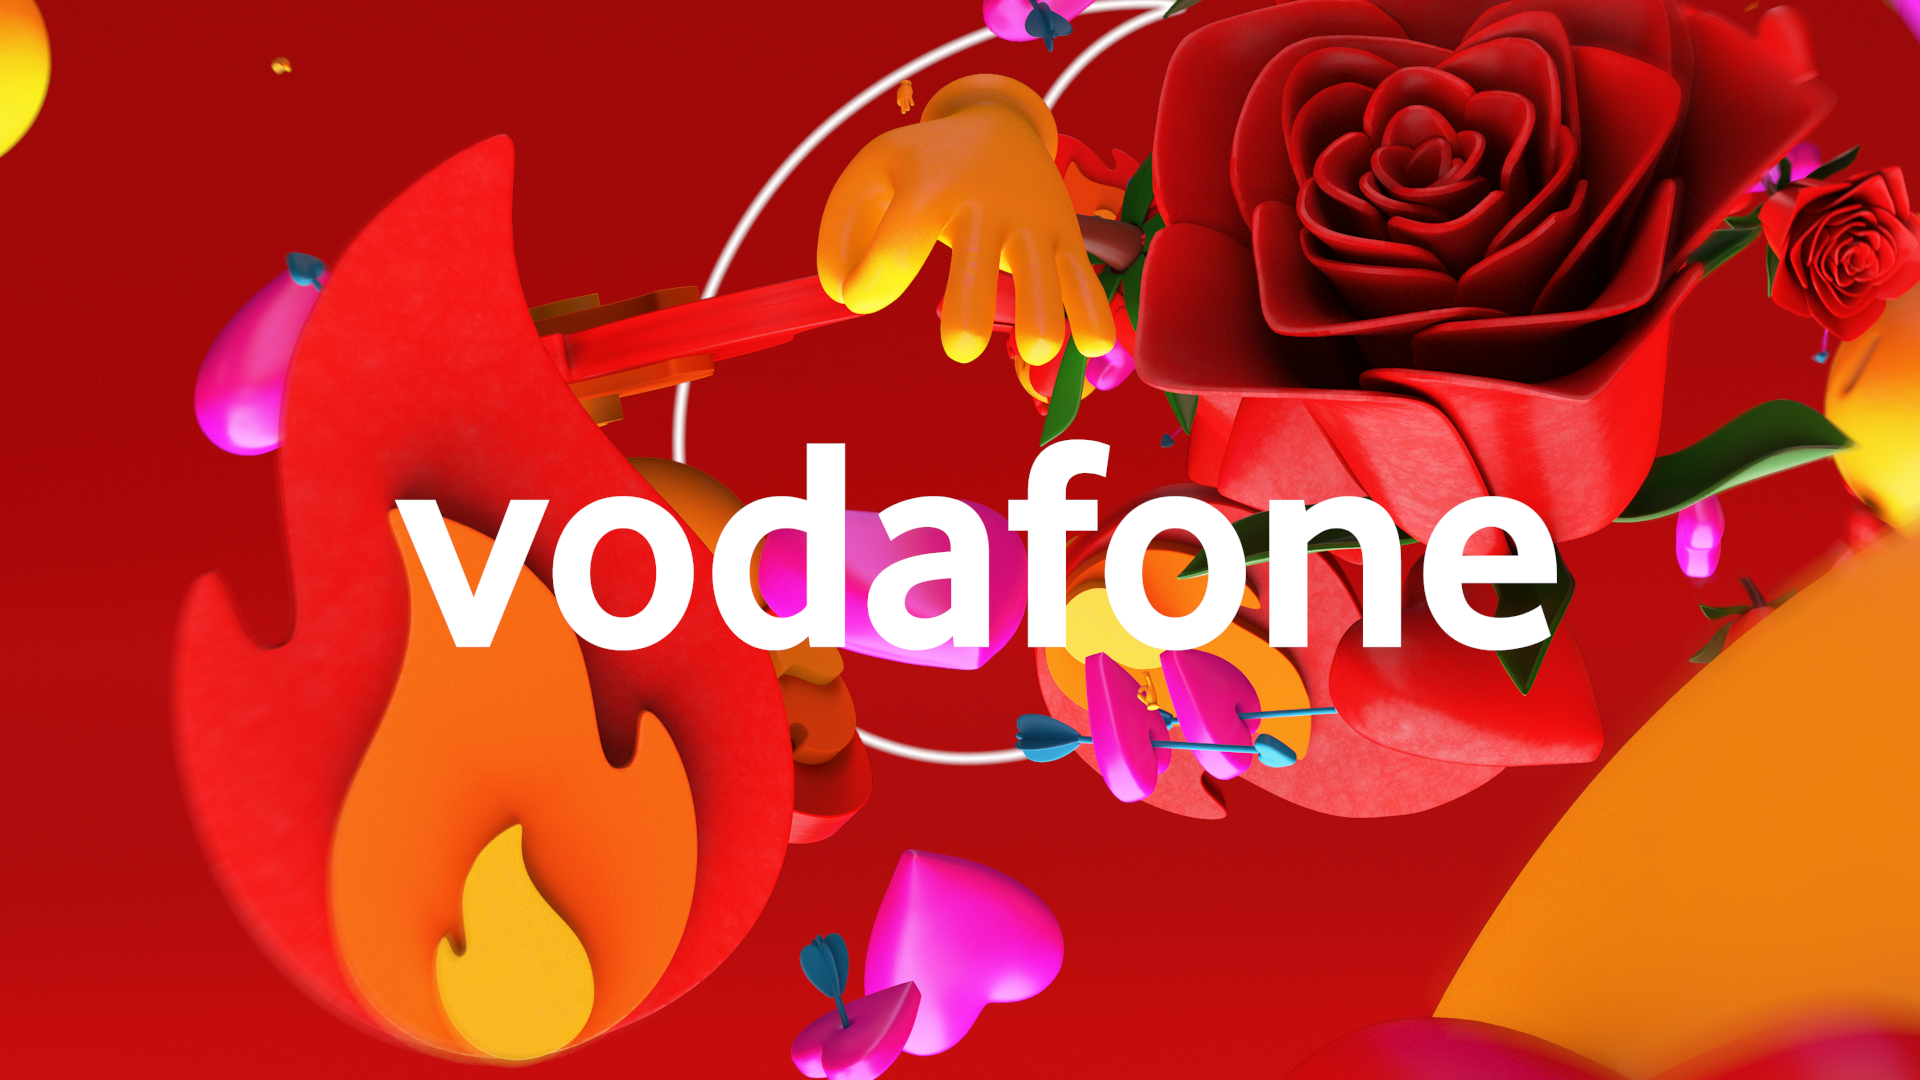 Vodafone - TwoFew